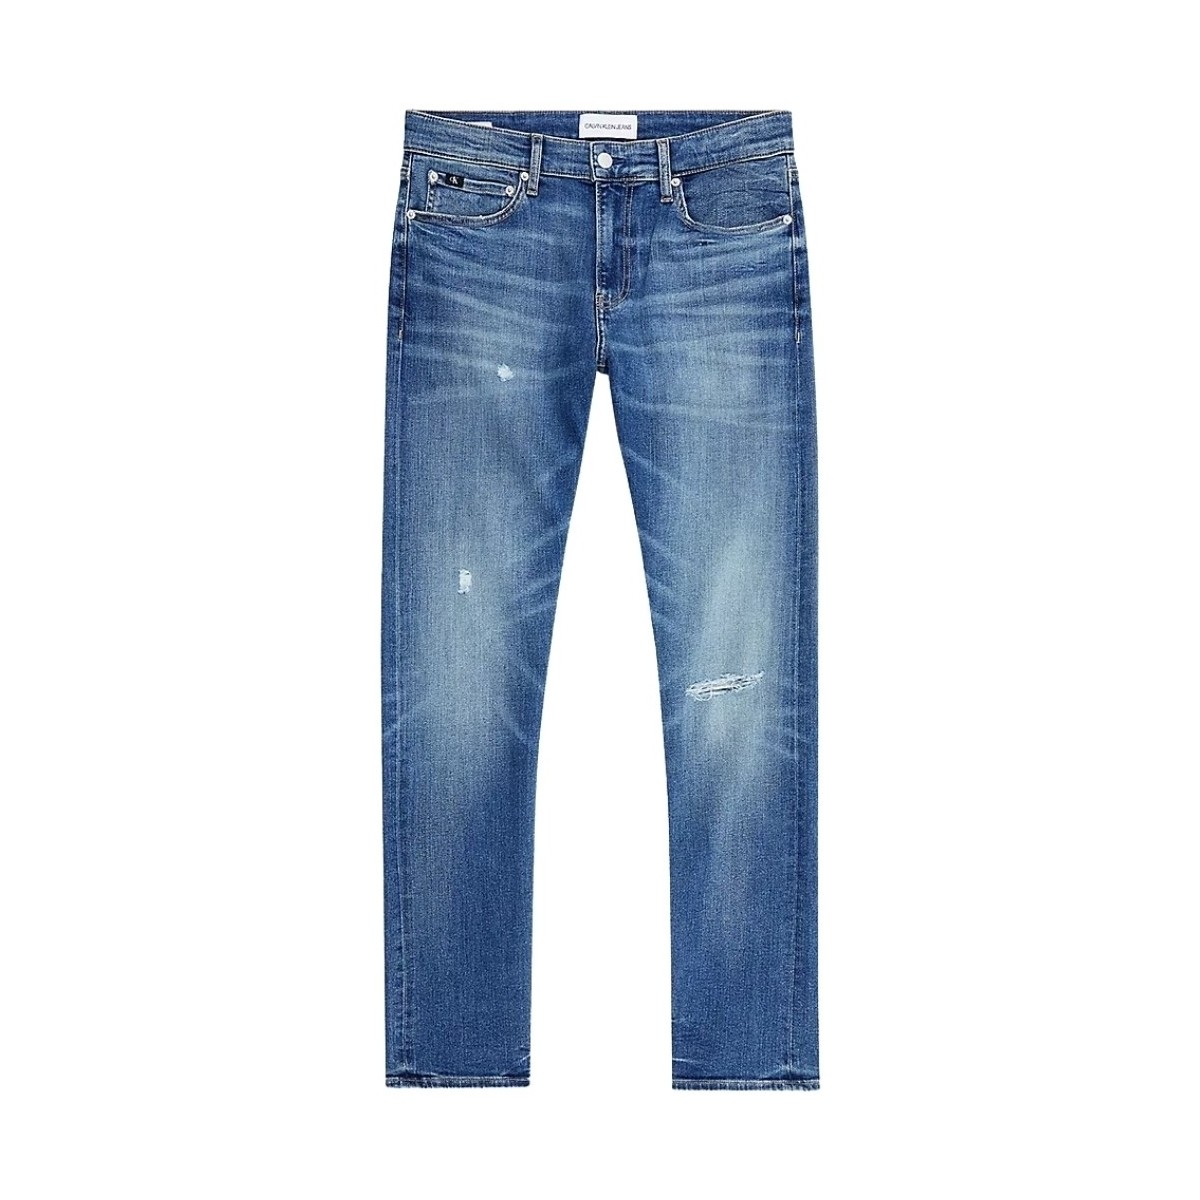 Vêtements Homme Jeans Calvin Klein Jeans Jean  Ref 53634 1A4 Bleu